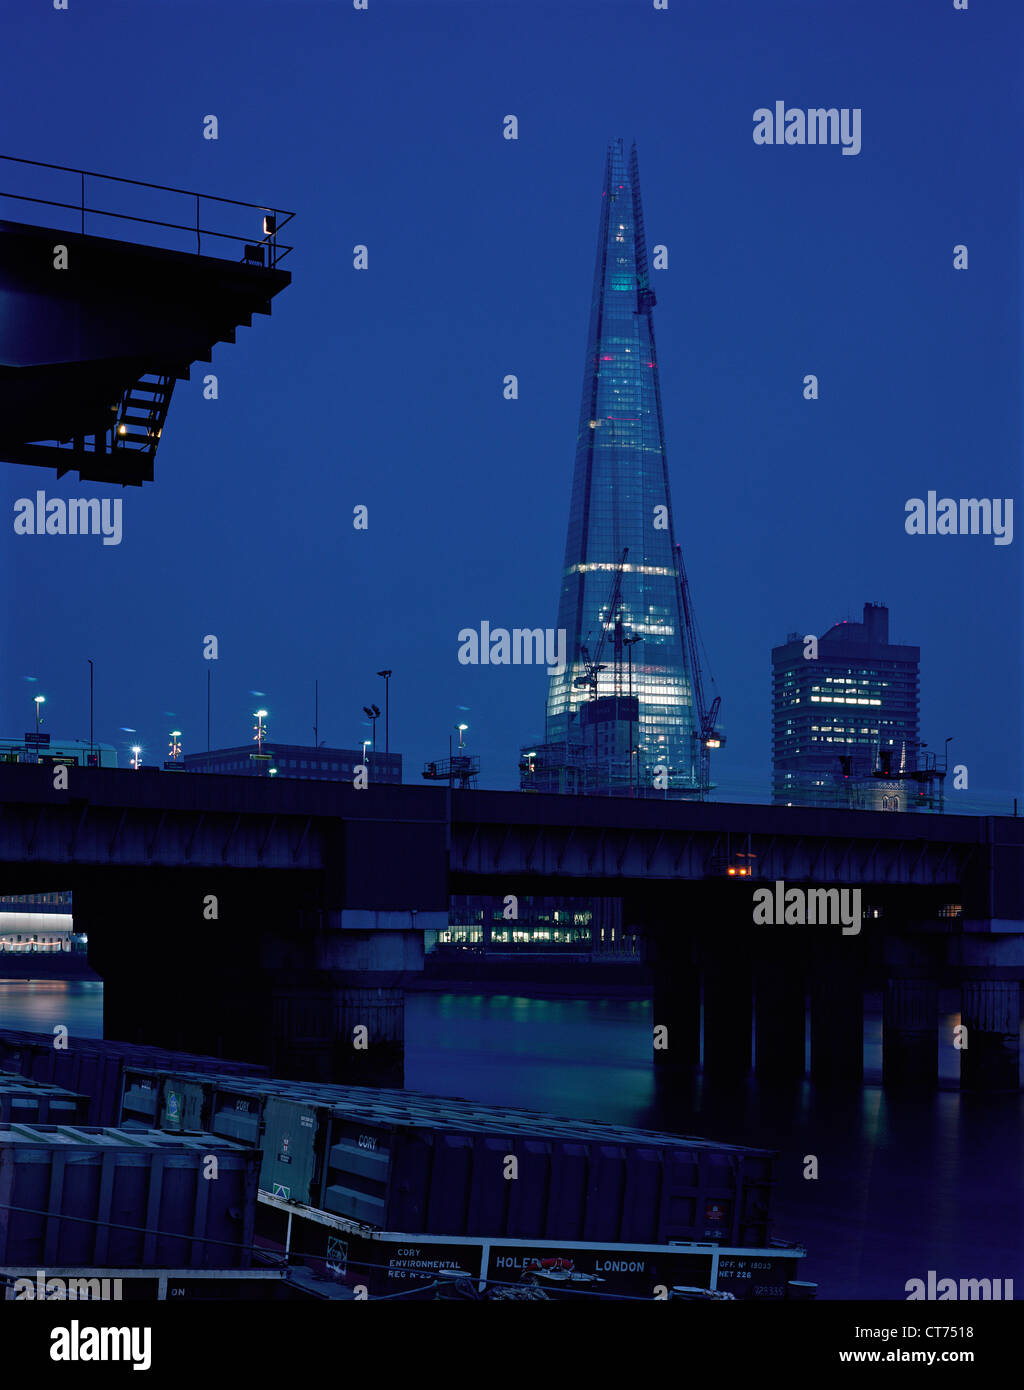 Shard, London, Vereinigtes Königreich. Architekt: Renzo Piano Building Workshop, 2012. Abenddämmerung Blick vom Thames Path zwischen Southwark Brid Stockfoto